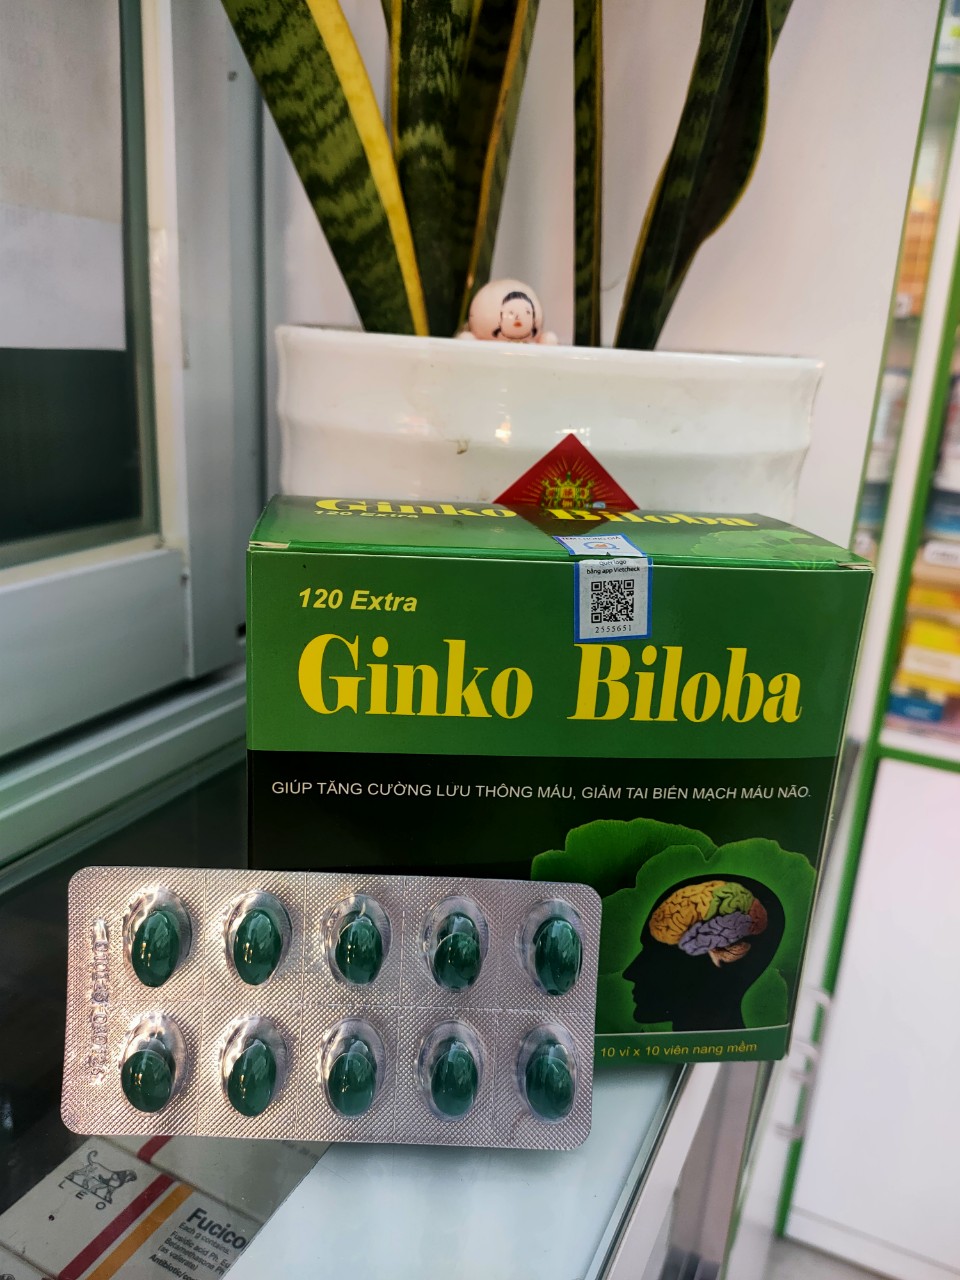 GINKO BILOBA 120 EXTRA hổ trợ tăng cường lưu thông máu